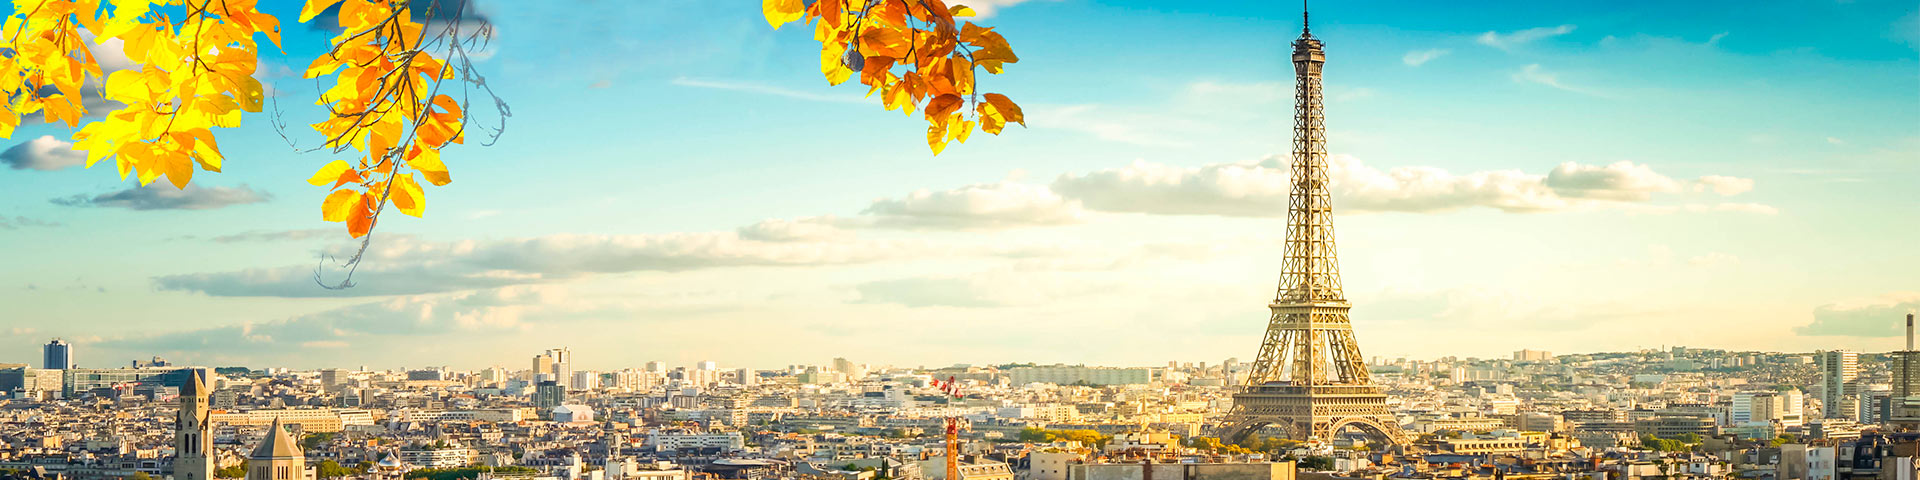 Französisch Übersetzung: Skyline von Paris mit Eiffelturm und Herbstblättern, Frankreich.